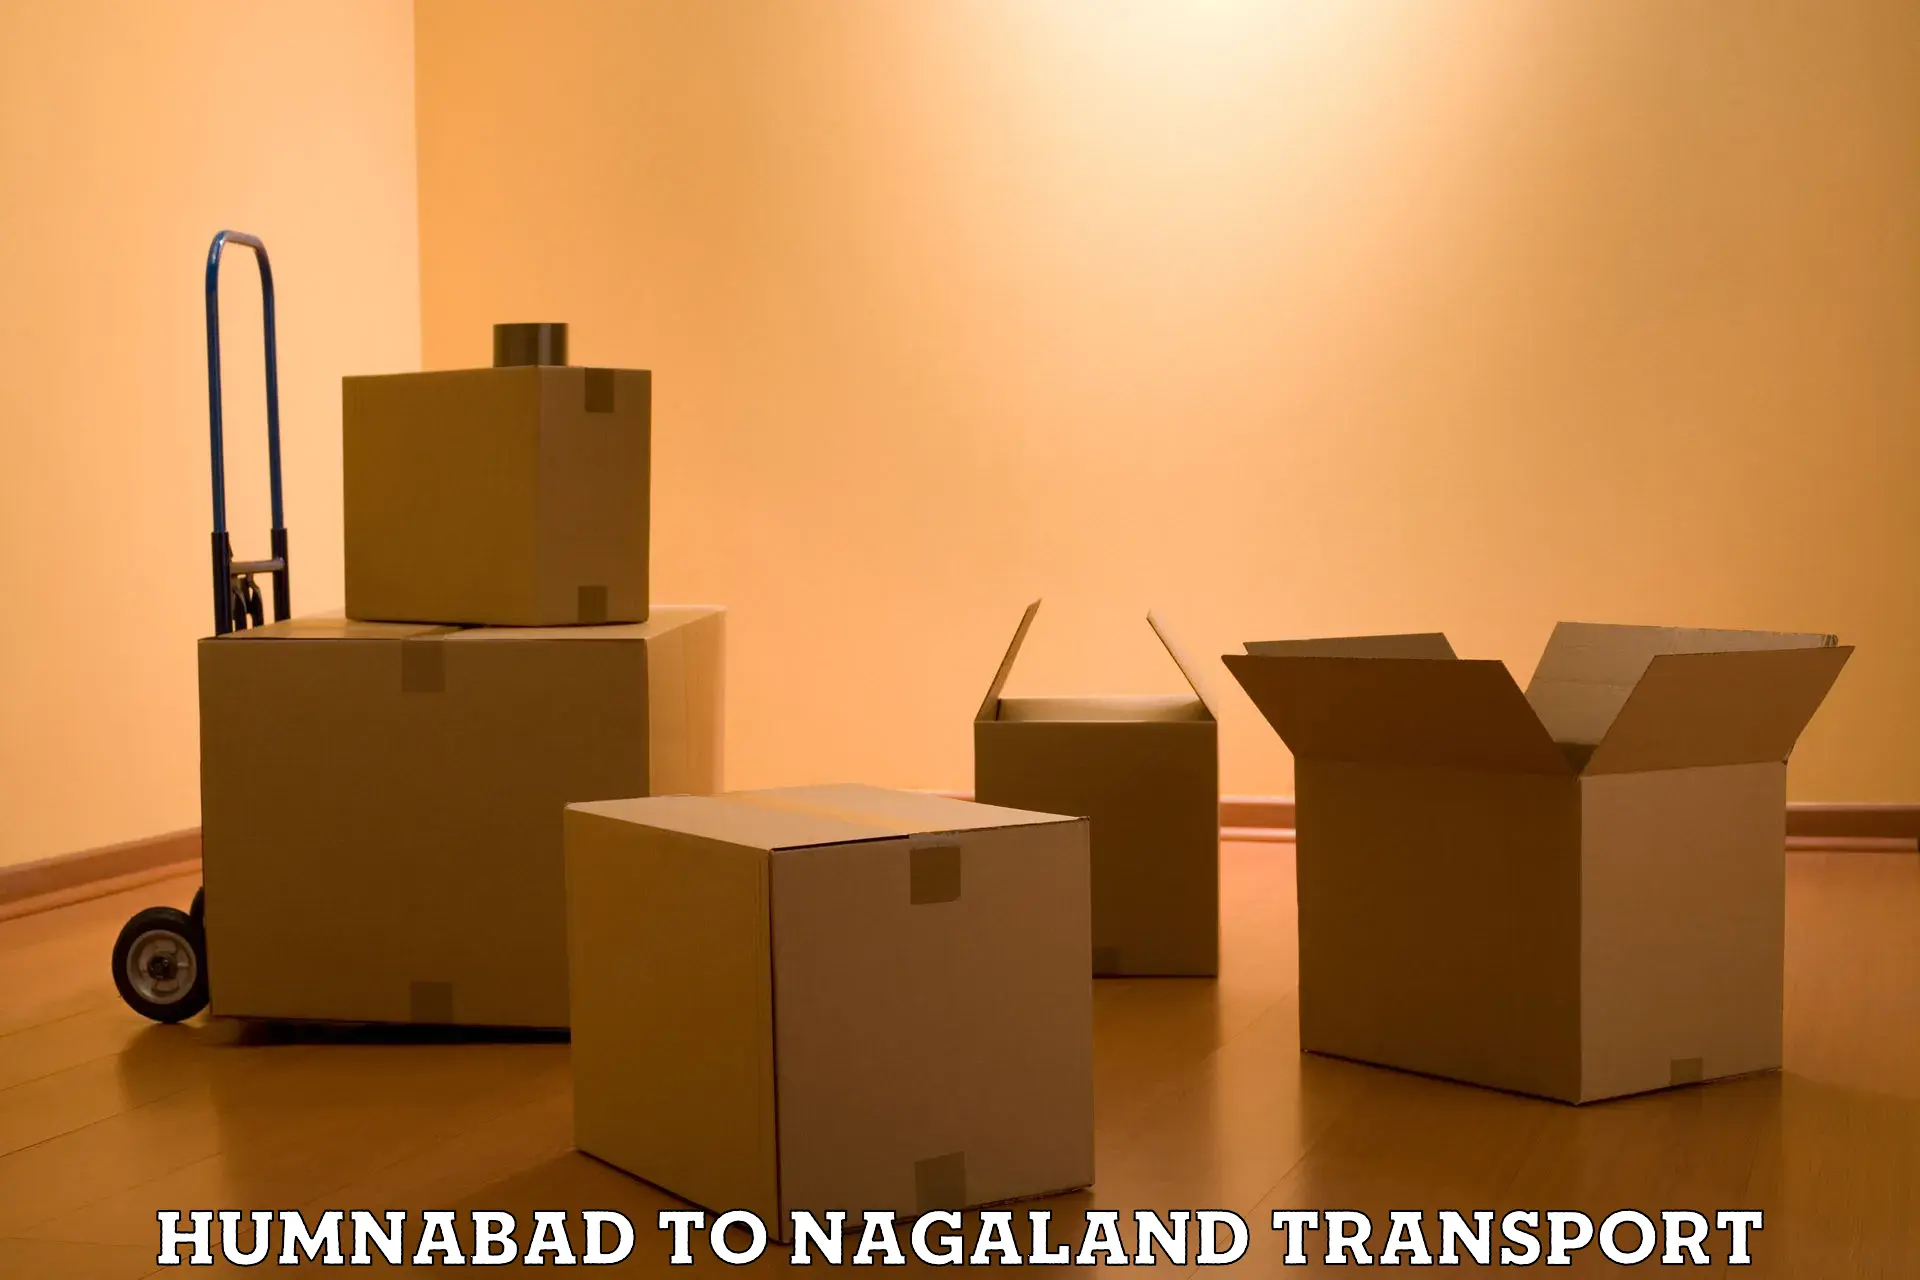 Pick up transport service Humnabad to Nagaland